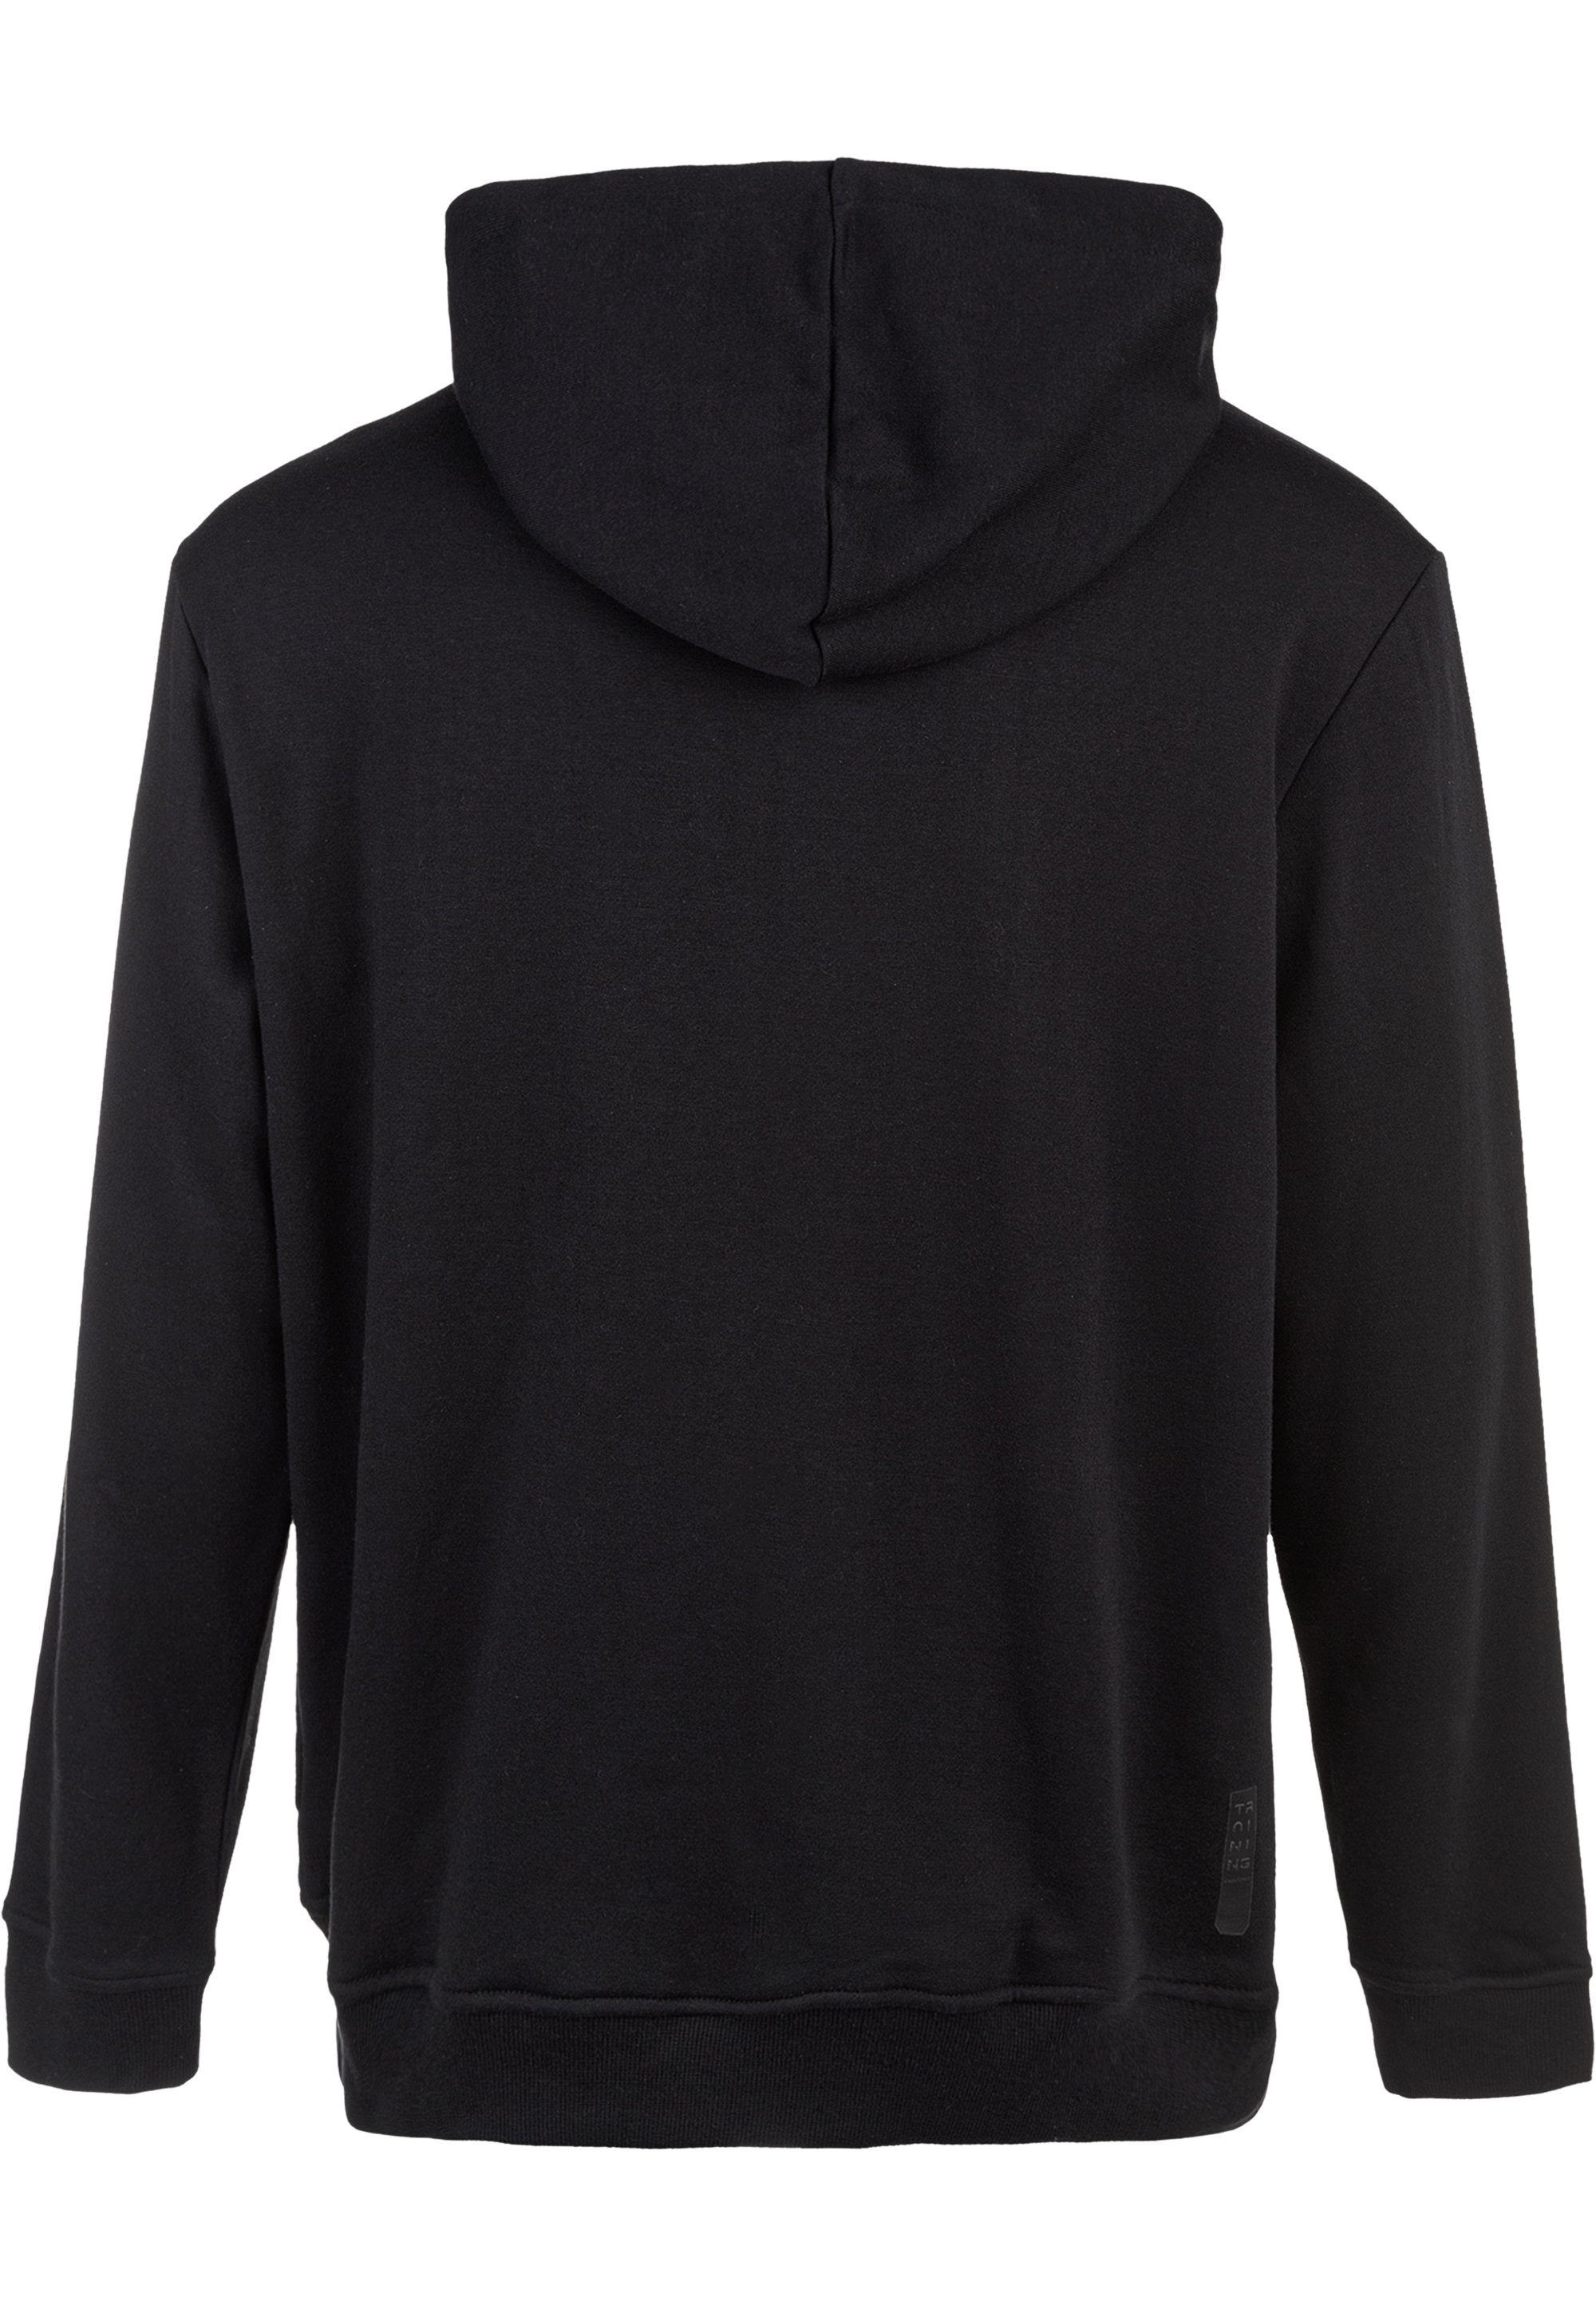 schnell in ENDURANCE LIONK Kapuzensweatshirt schwarz trockender Qualität